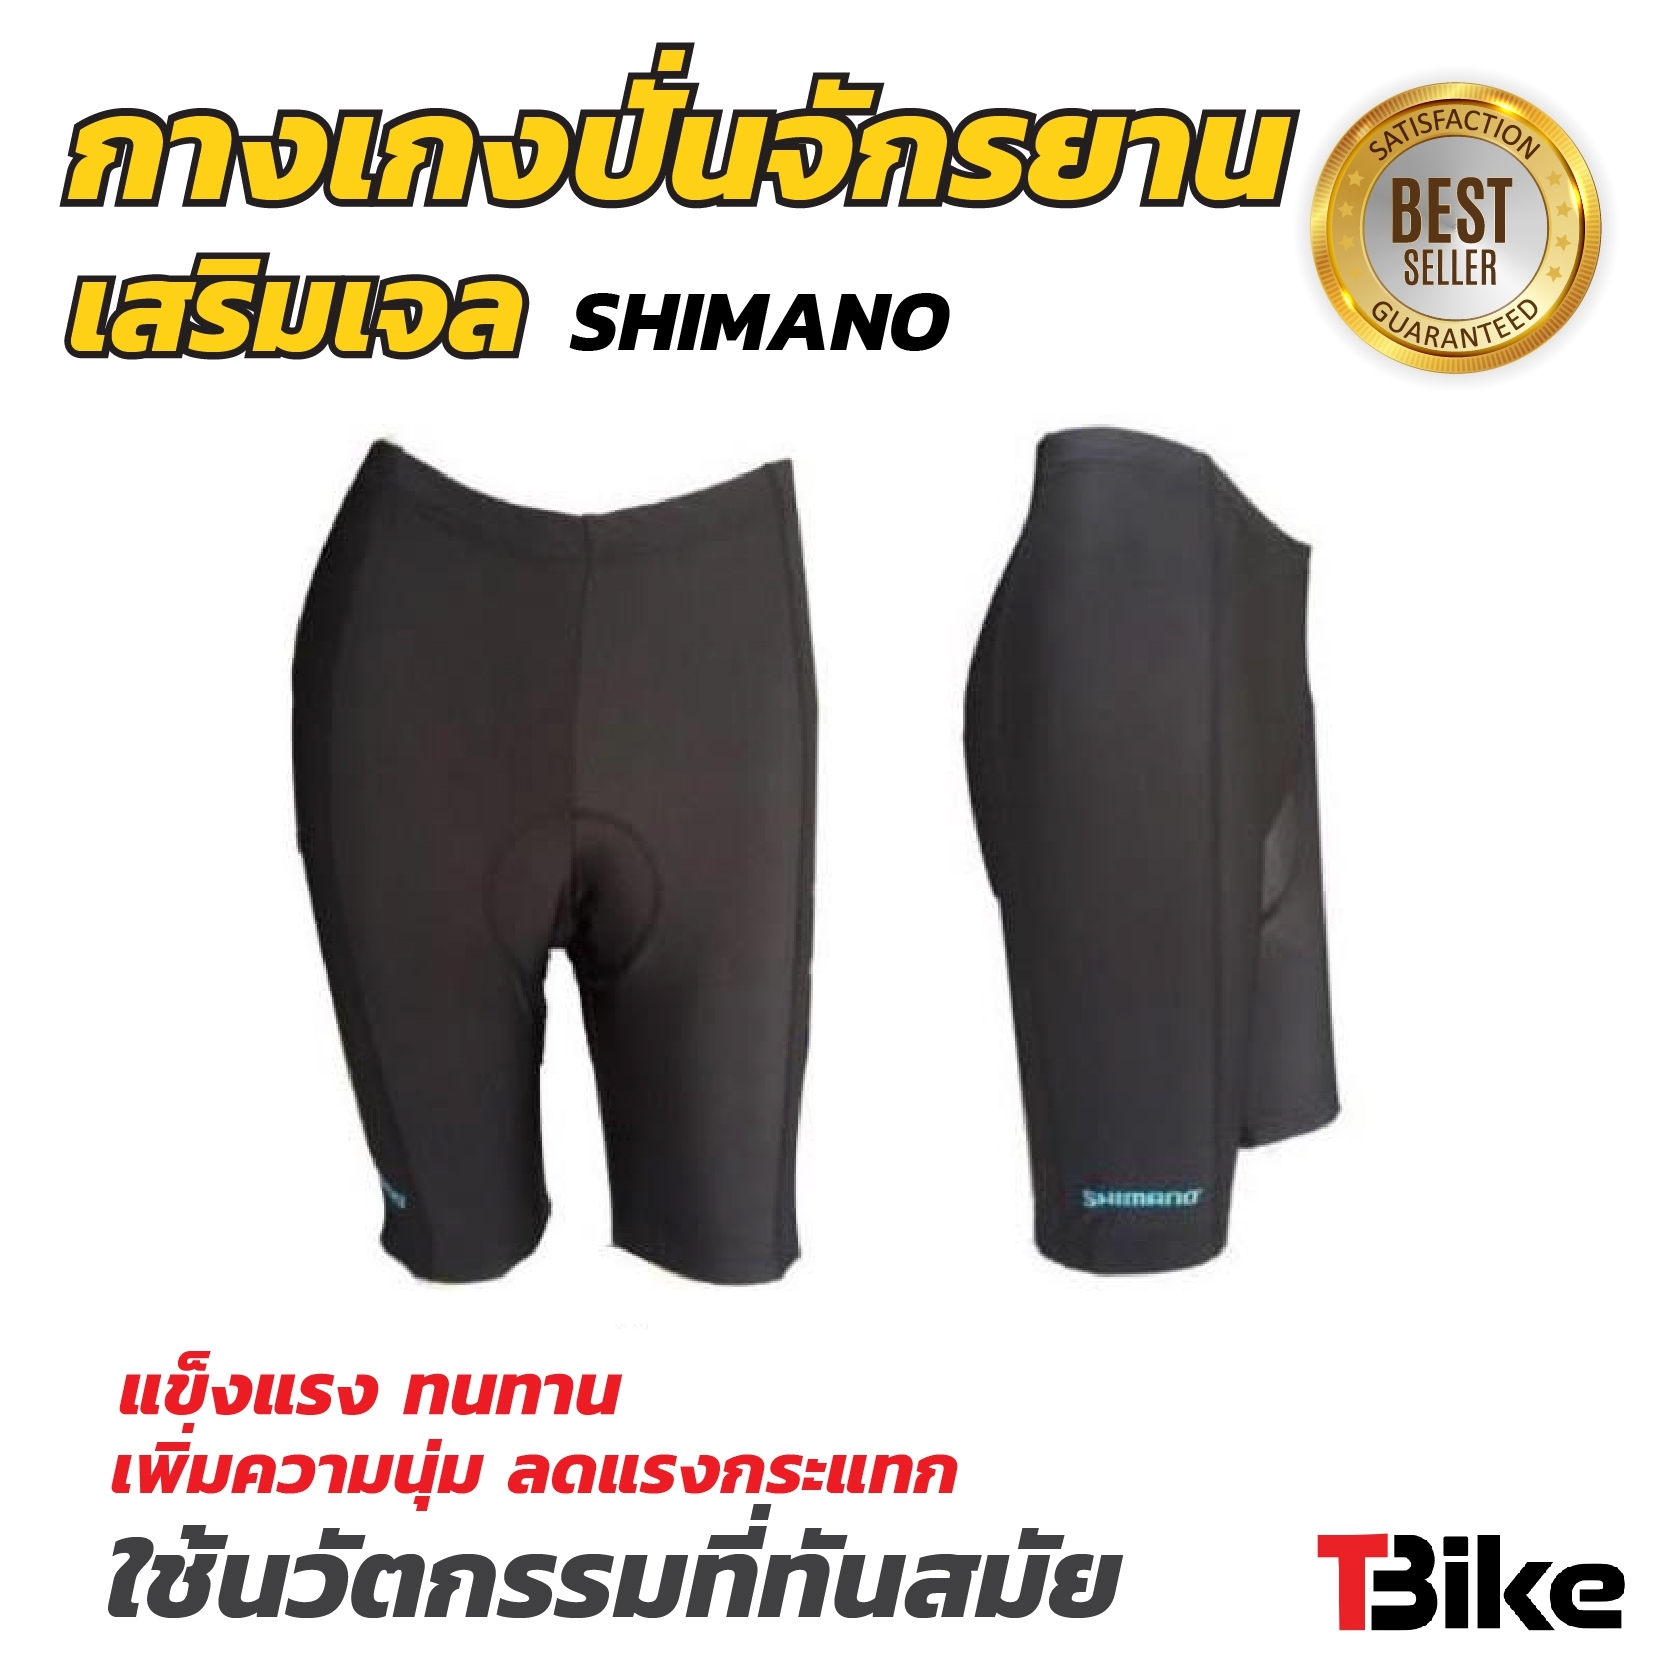 กางเกงจักรยาน กางเกงขาสั้น สำหรับใส่ปั่นจักรยาน ( size XL 32-36) ใส่ ออกกำลังกาย กางเกงปั่นจักรยาน  ยี่ห้อ SHIMANO ใส่ปั่นจักรยาน